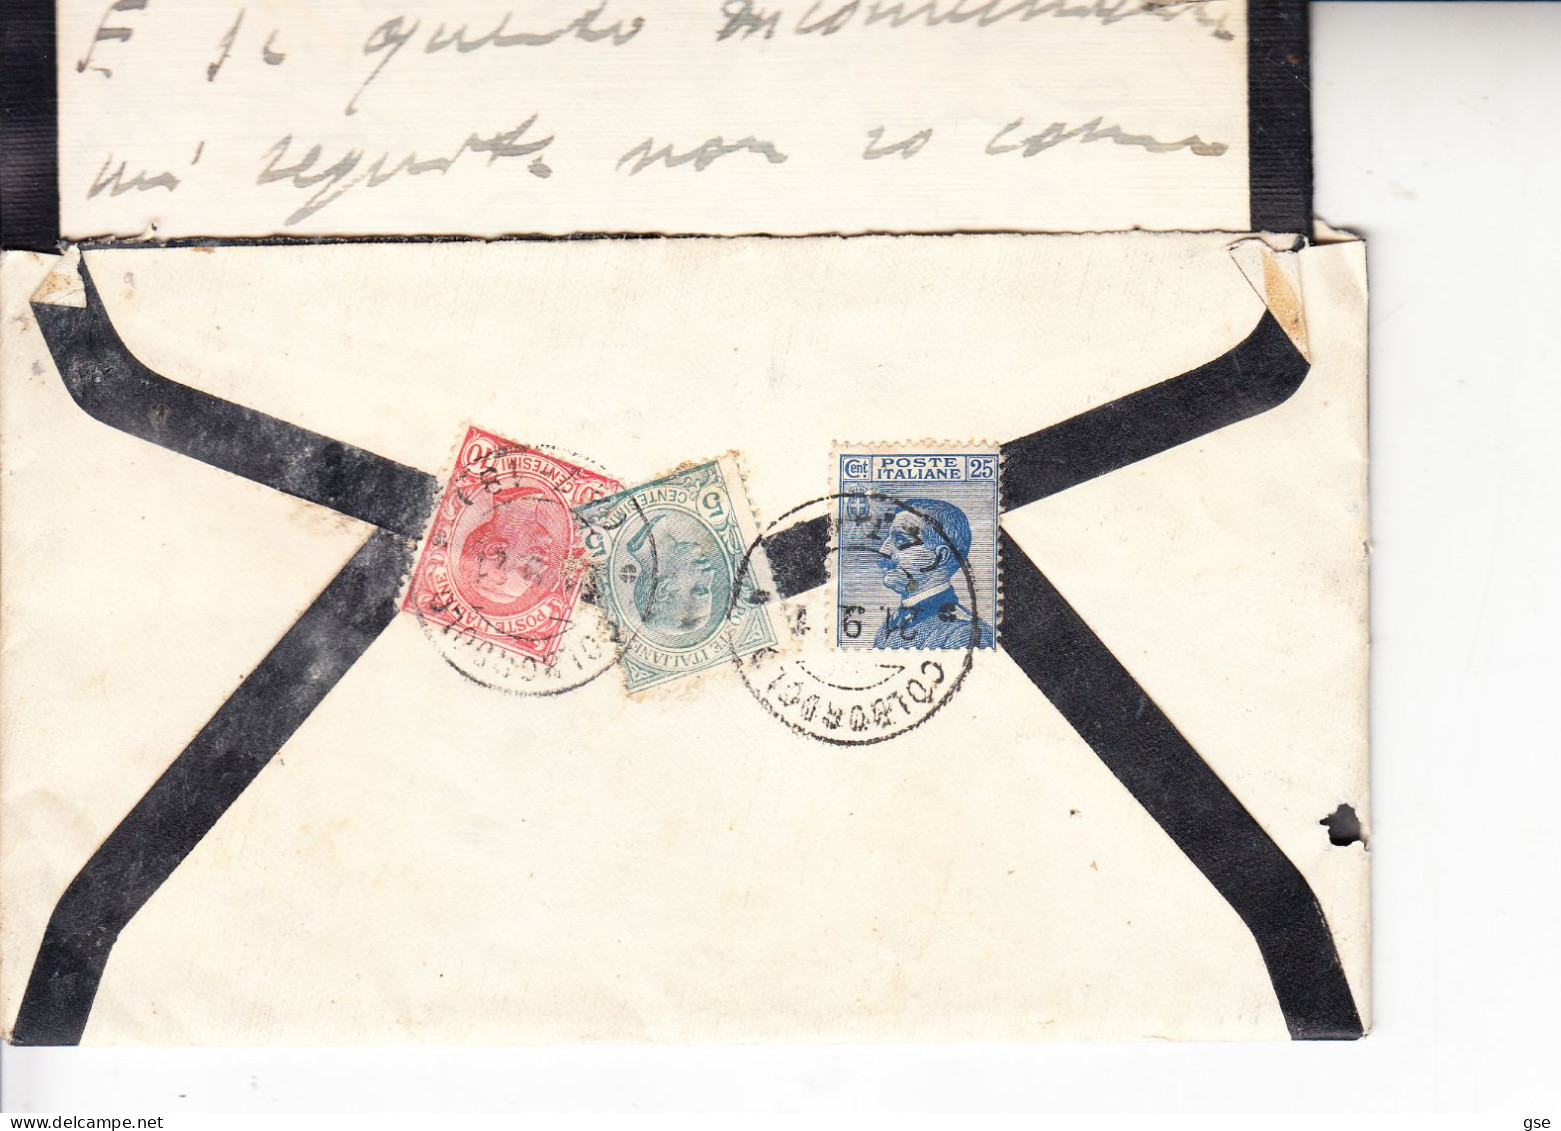 ITALIA 1921 - Esopresso Da Colbordoli Affrancato Con 3 Diferrenti Francobolli Del Regno - Express Mail